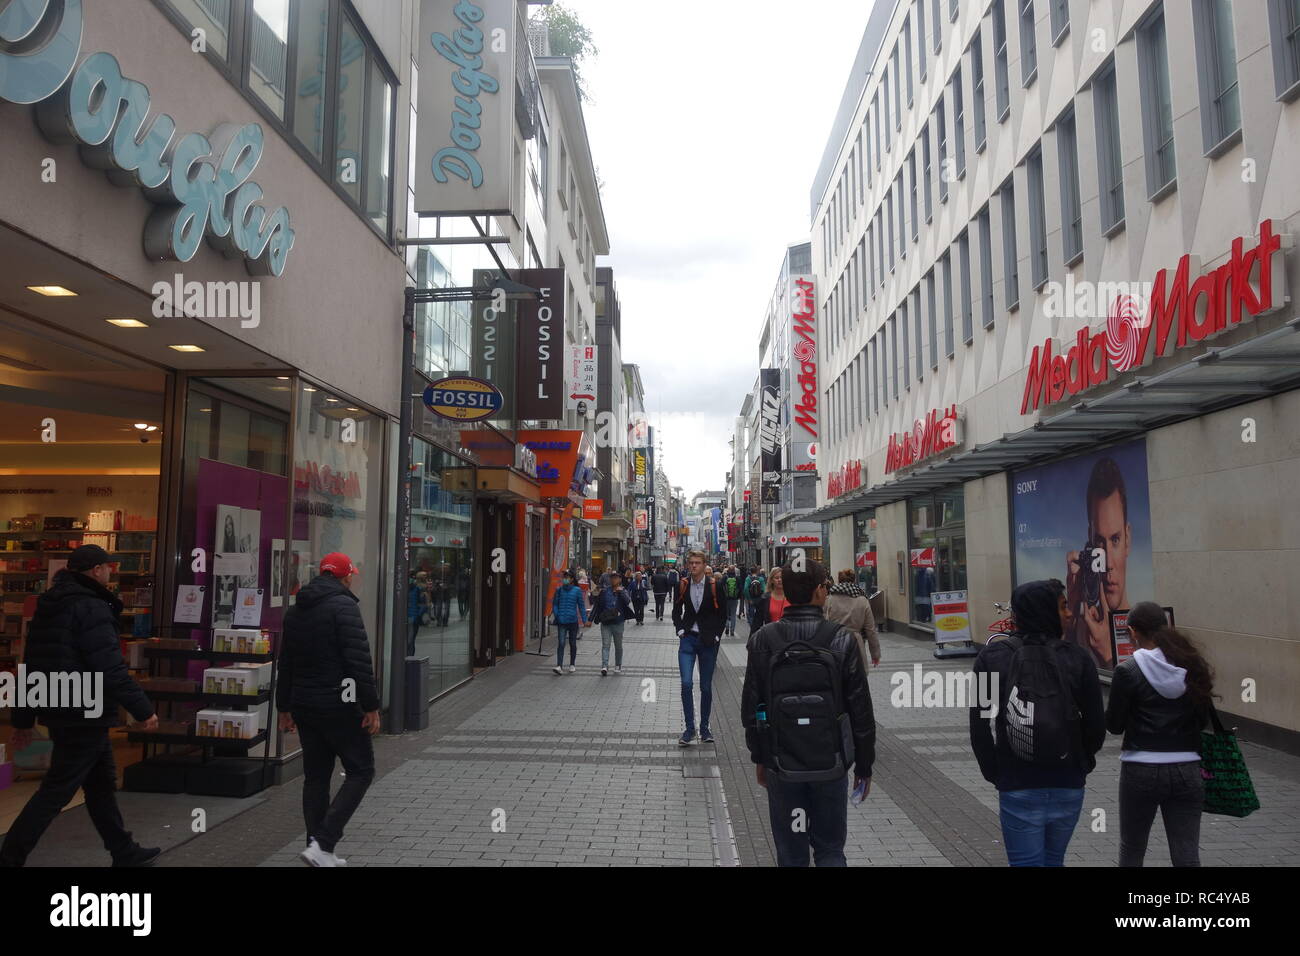 Gli amanti dello shopping sulla Hohe Straße, una importante strada per lo shopping nella città vecchia di Colonia, Germania, una delle città più trafficate strade. Foto Stock